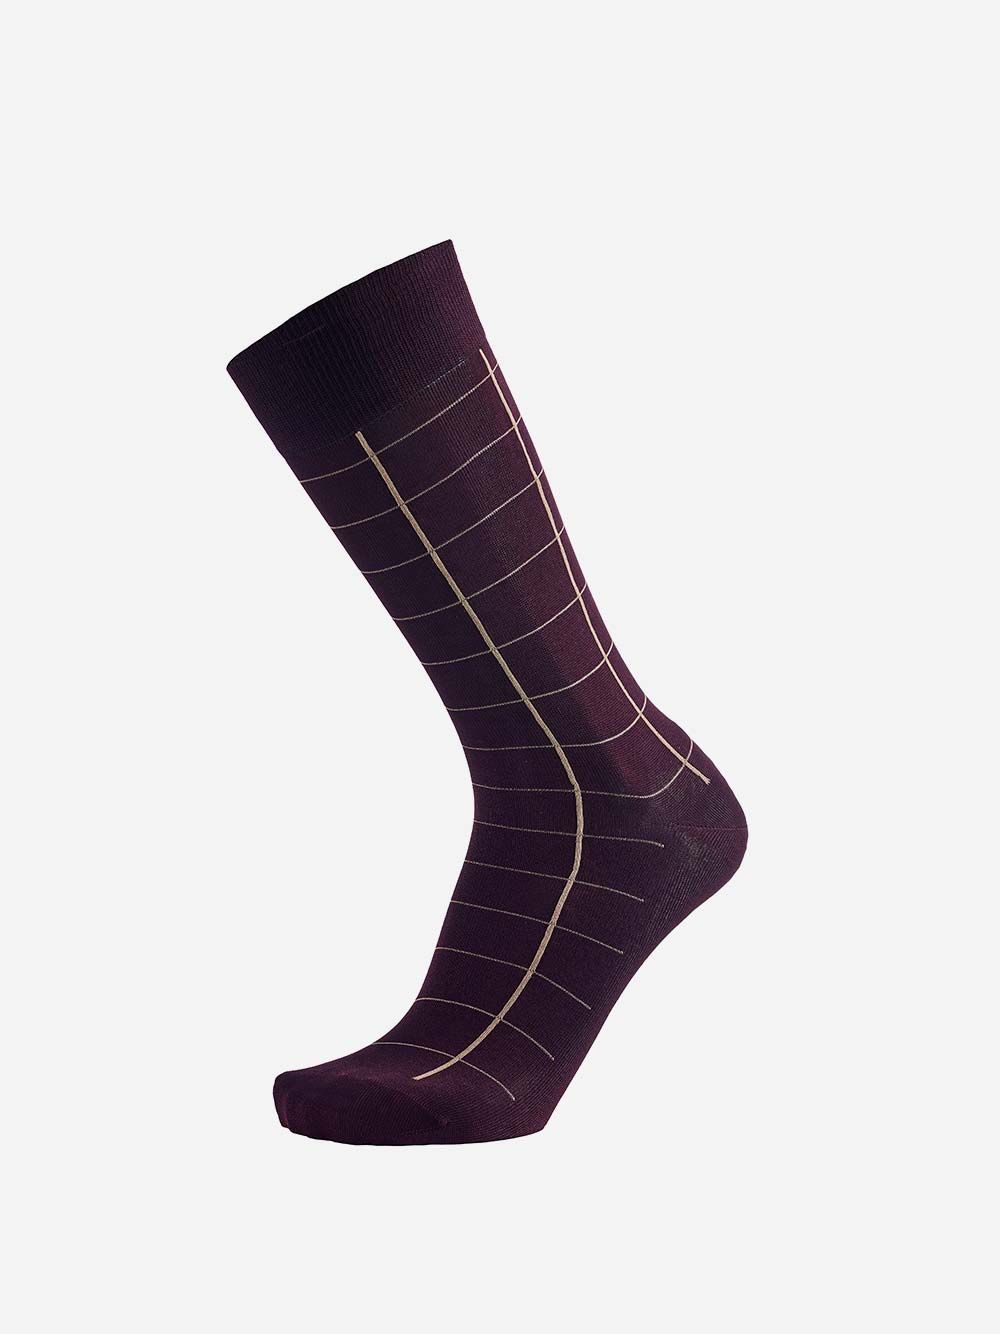 Striped Burgundy Socks | Westmister